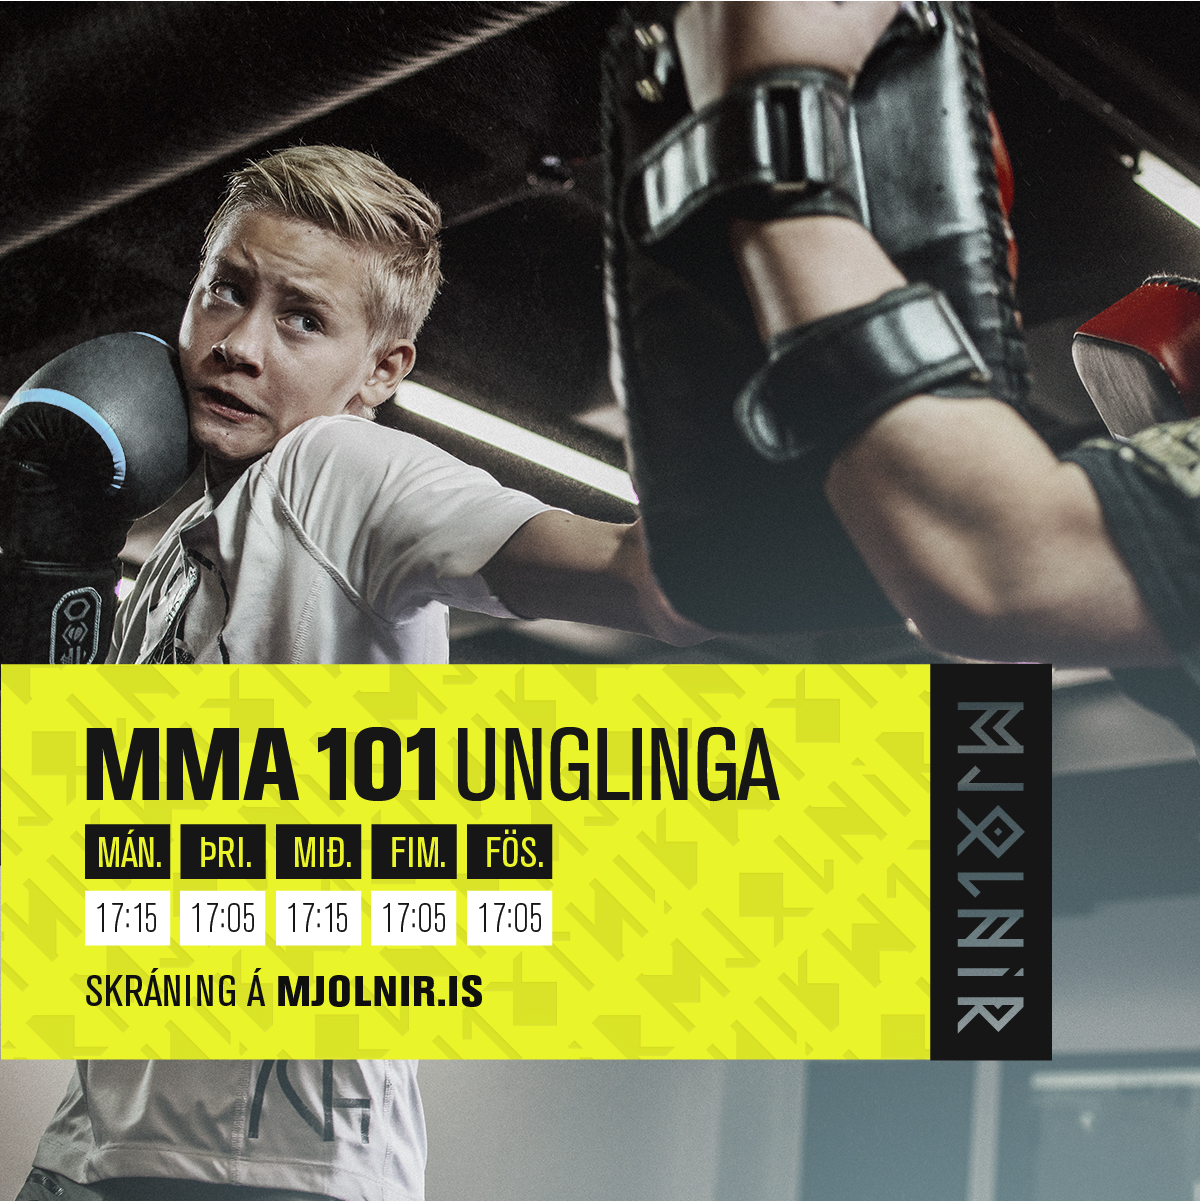 MMA 101 unglinga